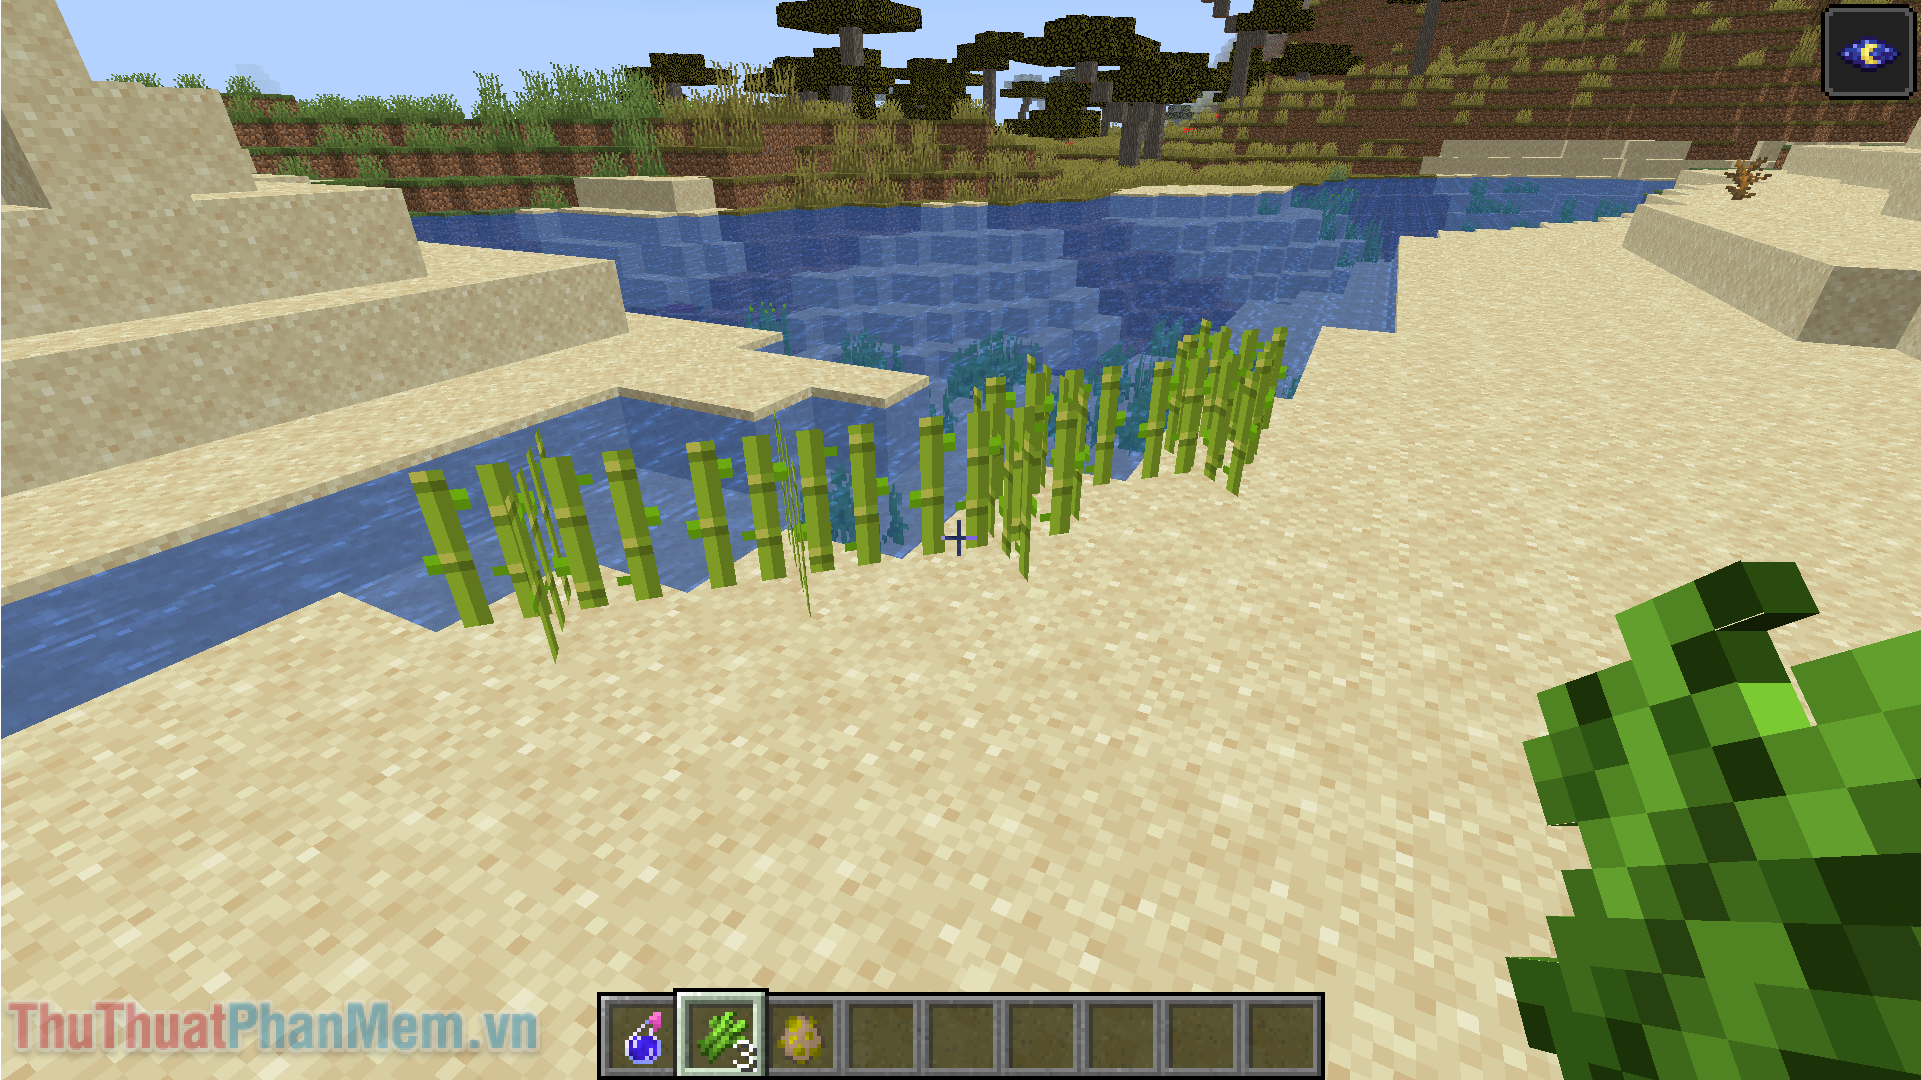 Khi thu hoạch, bạn nên để lại một khúc mía ở gần nước để nó có thể tiếp tục mọc